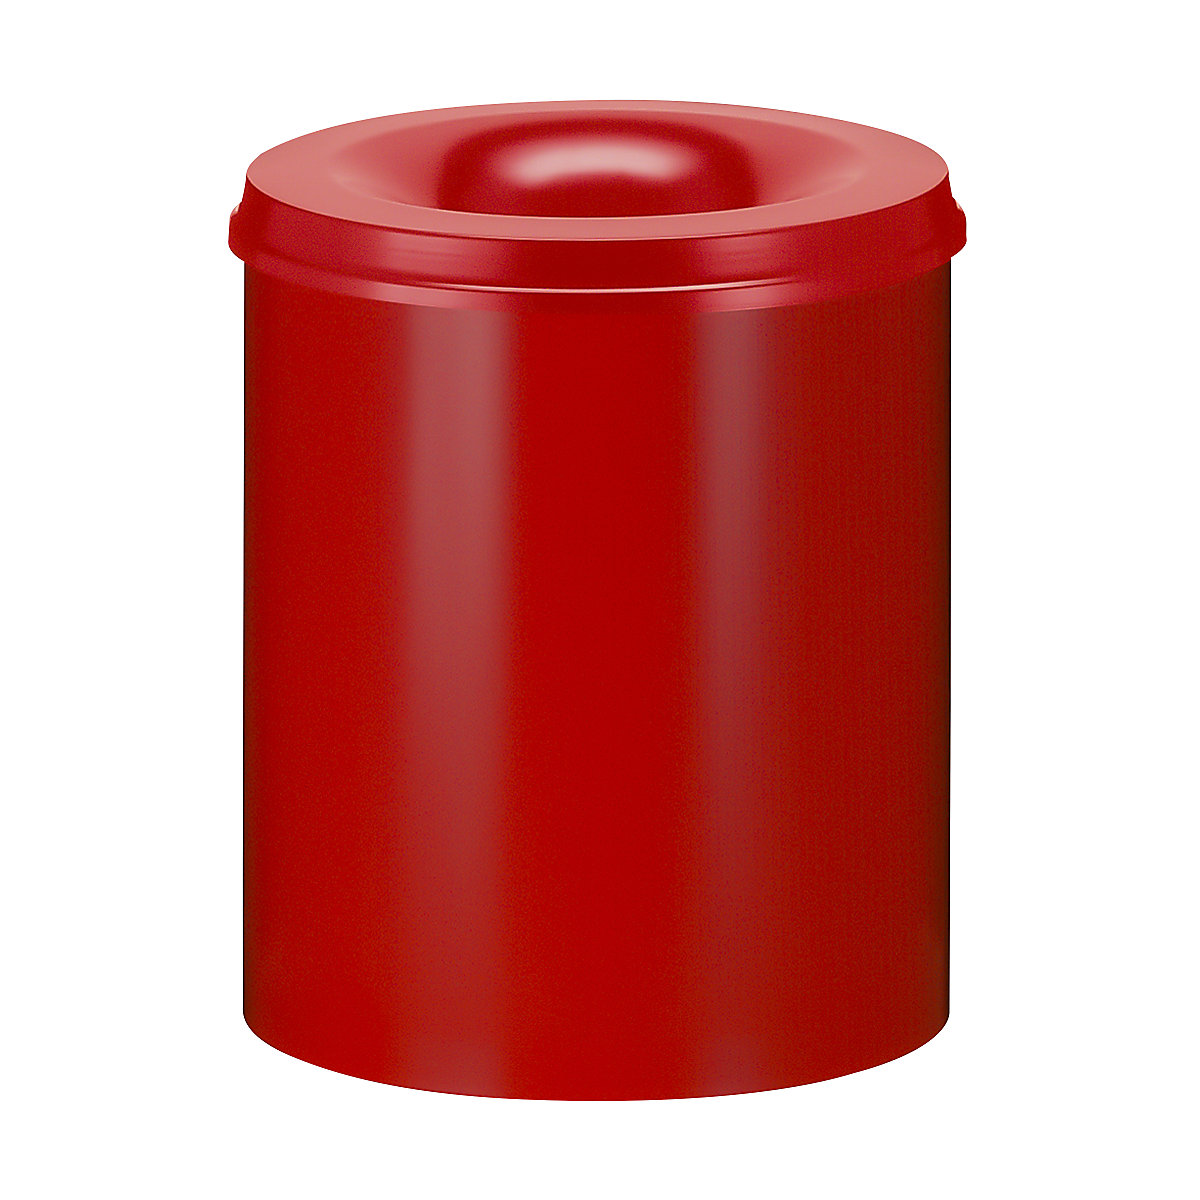 Bezpečnostný kôš na papier, oceľový, samohasiaci, objem 80 l, v x Ø 540 x 465 mm, korpus červená / hasiaca hlavica červená-10